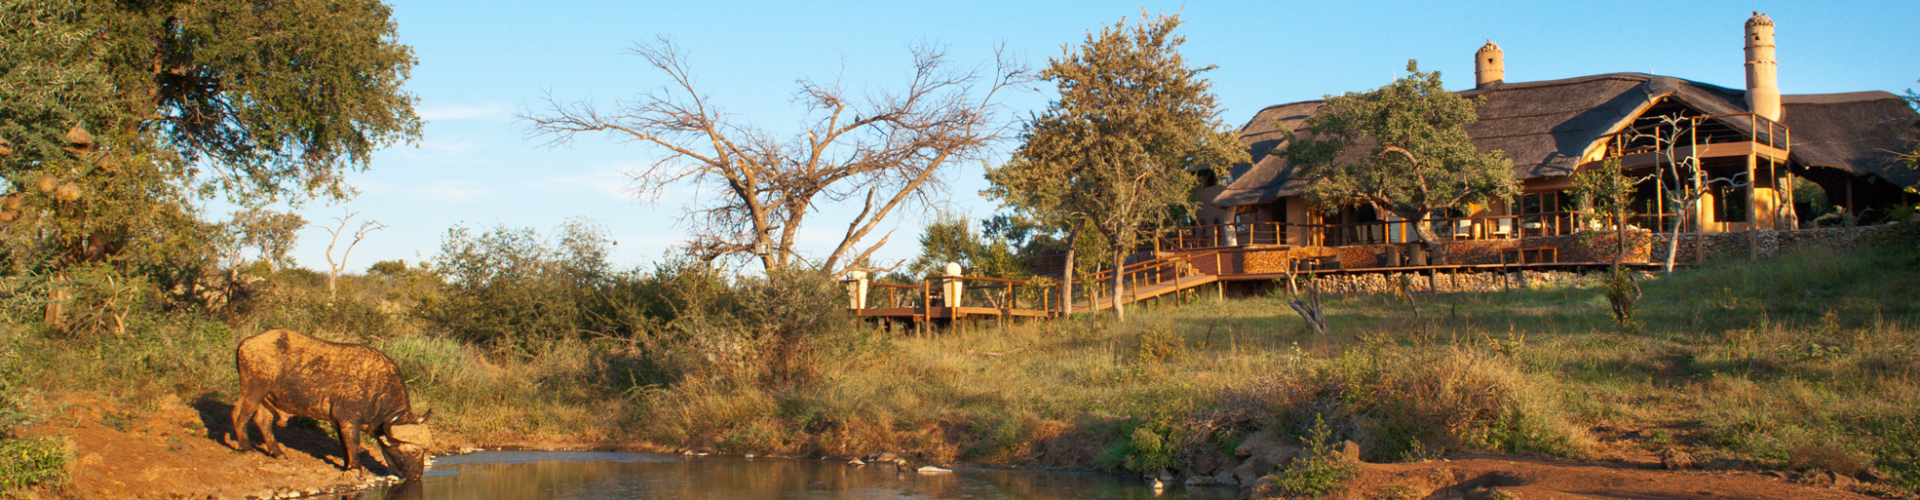 royal-madikwe-safari-lodge-madikwe-game-reserve-zuid-afrika